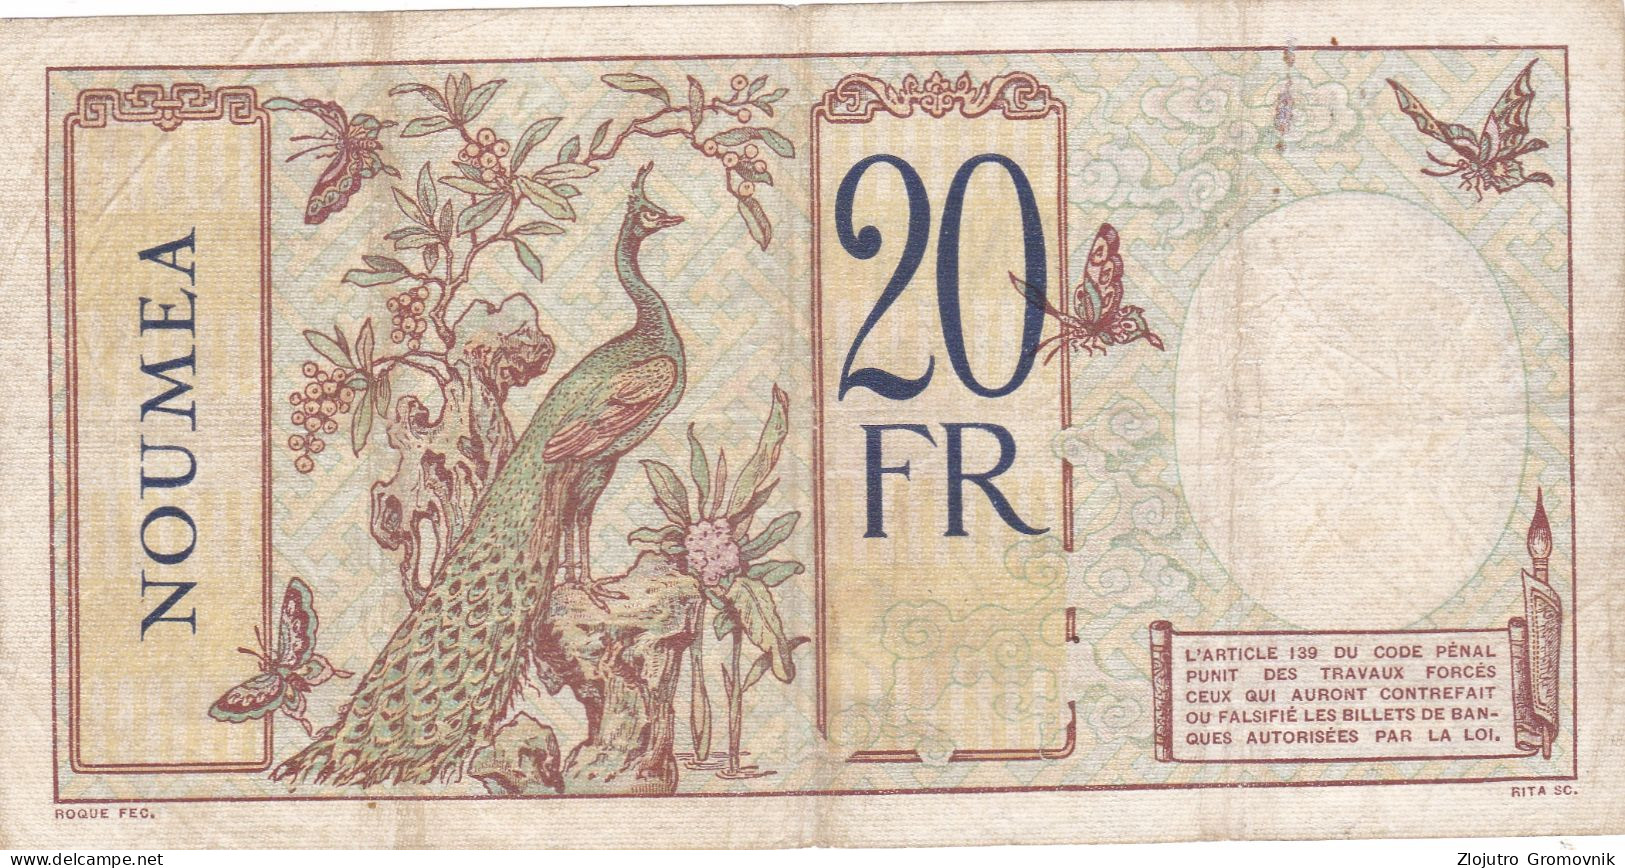 20 Francs France Libre ! Overprint !  R - New Hebrides